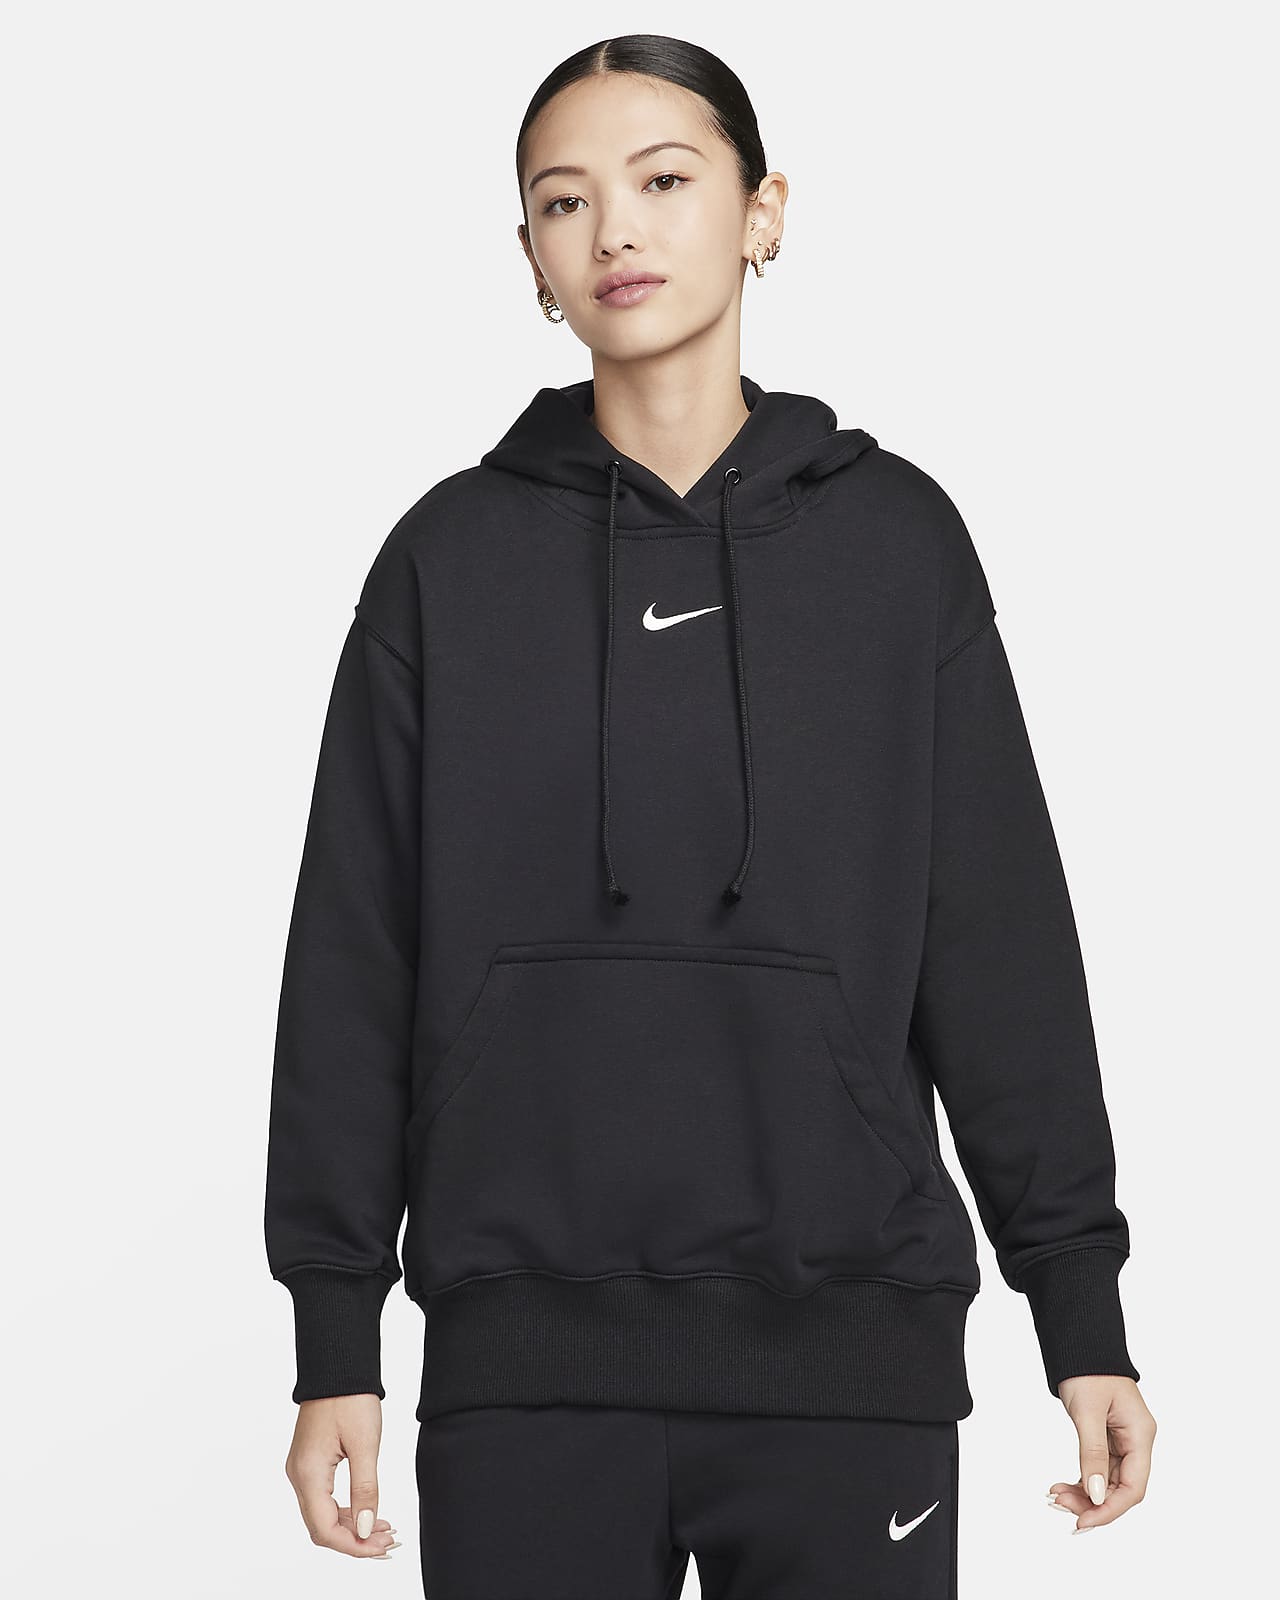 Nike Sportswear Phoenix Fleece Women's Oversized Sweatshirt French Terry Hoodie